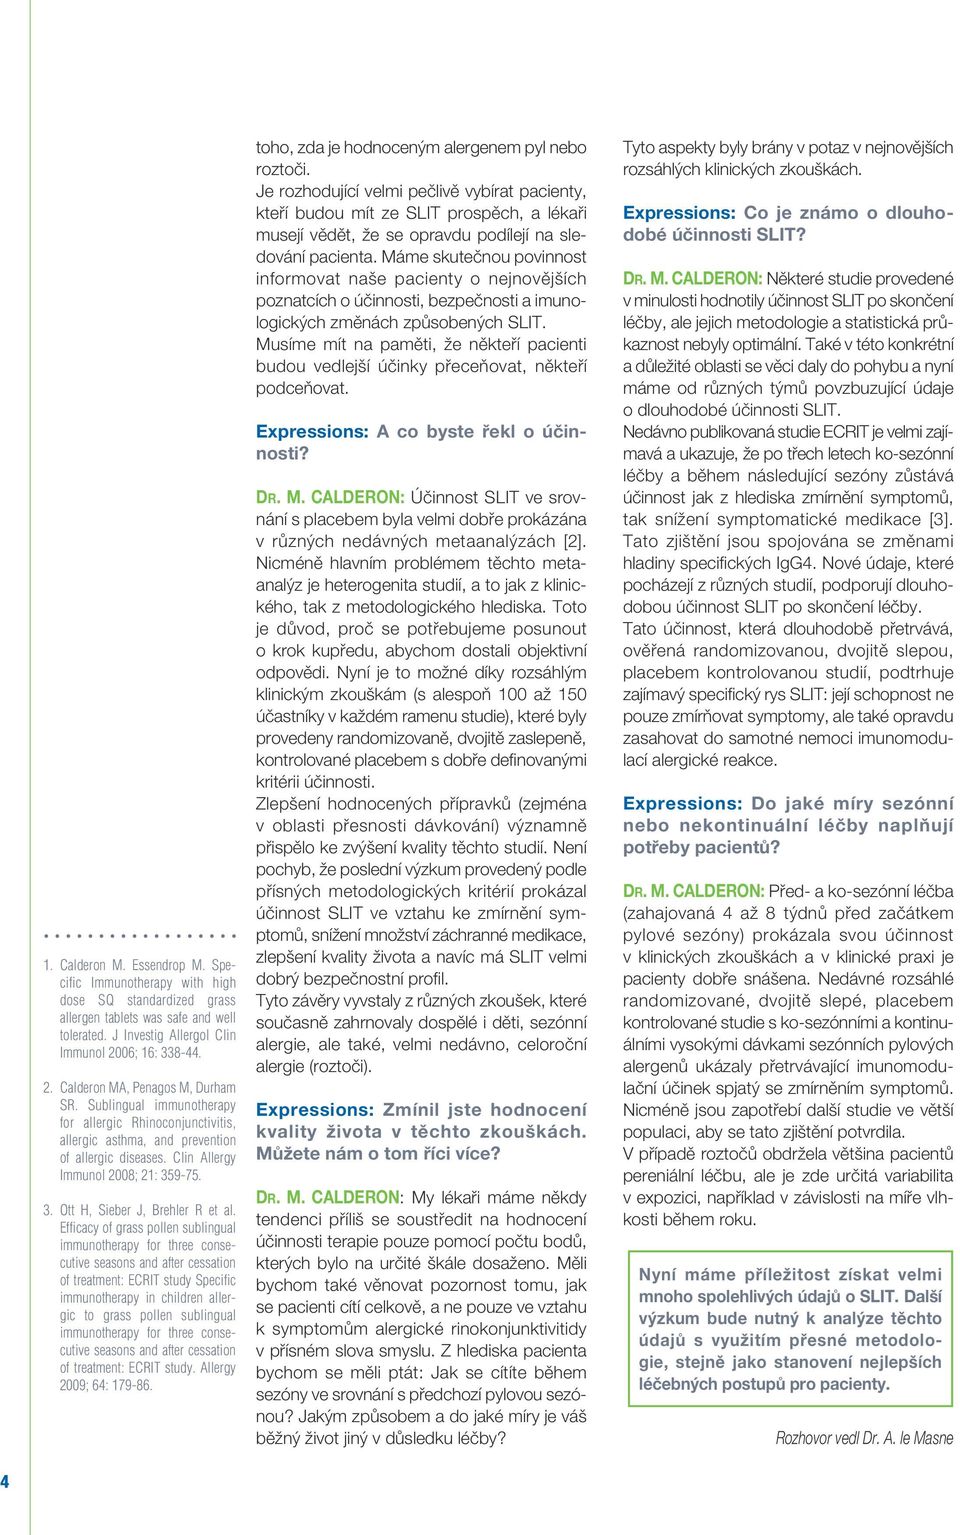 Clin Allergy Immunol 2008; 21: 359-75. 3. Ott H, Sieber J, Brehler R et al.